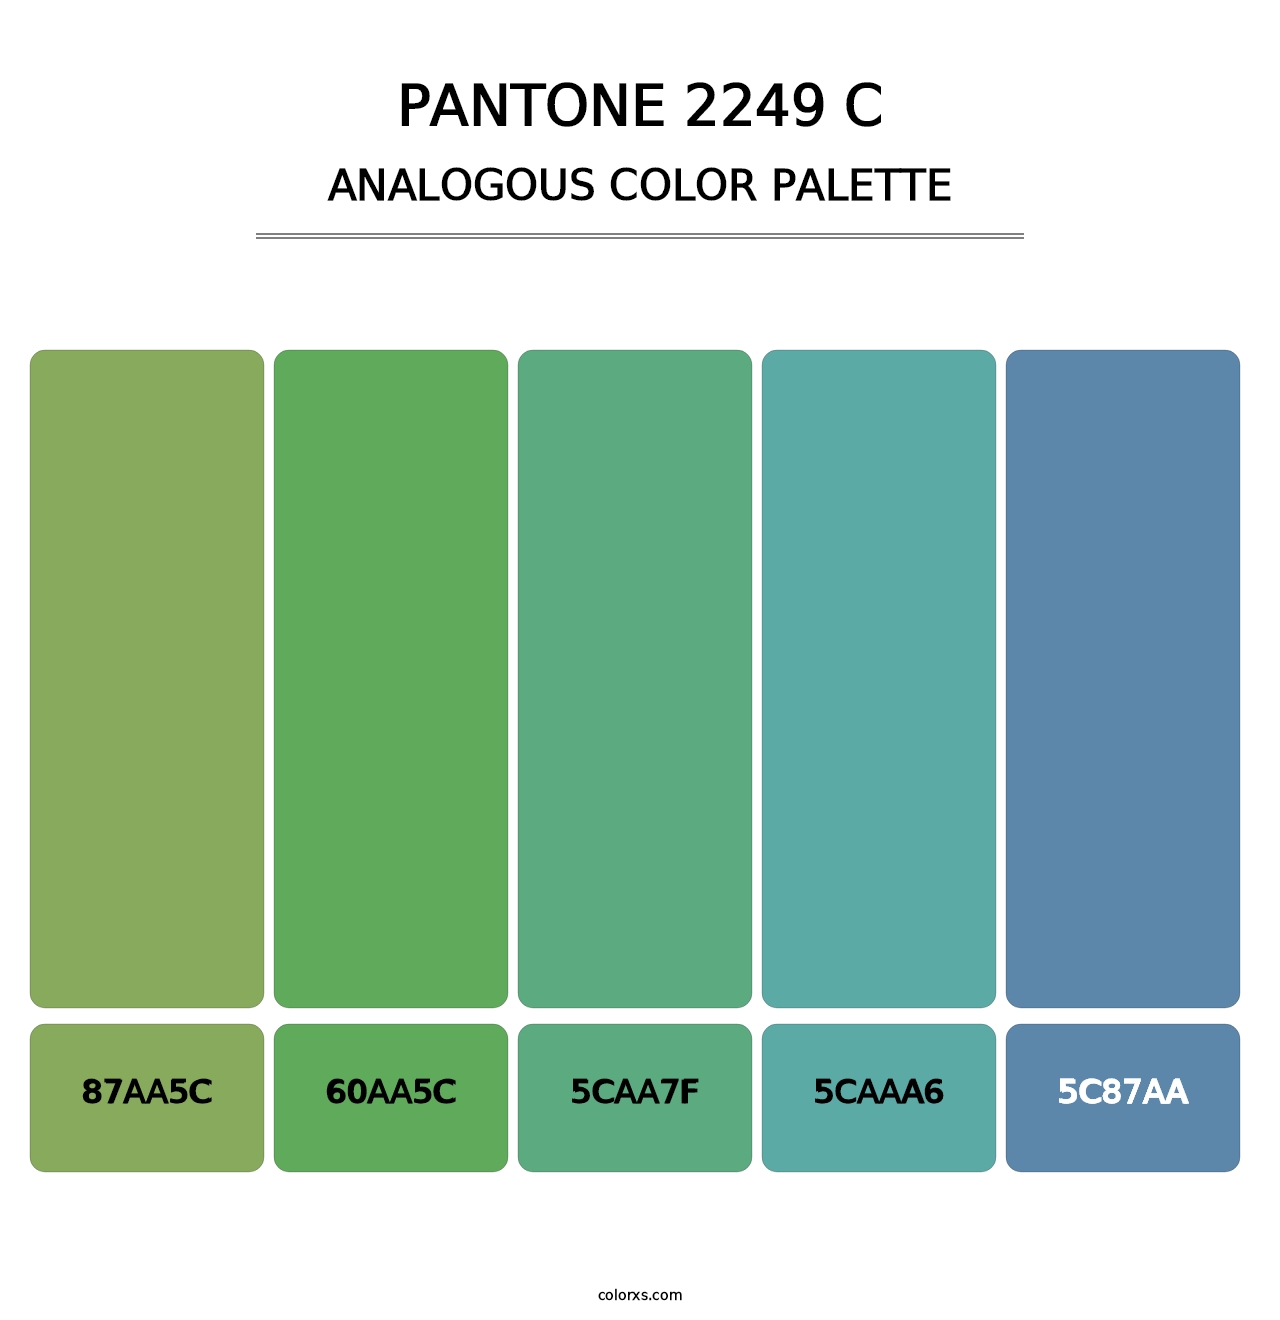 PANTONE 2249 C - Analogous Color Palette